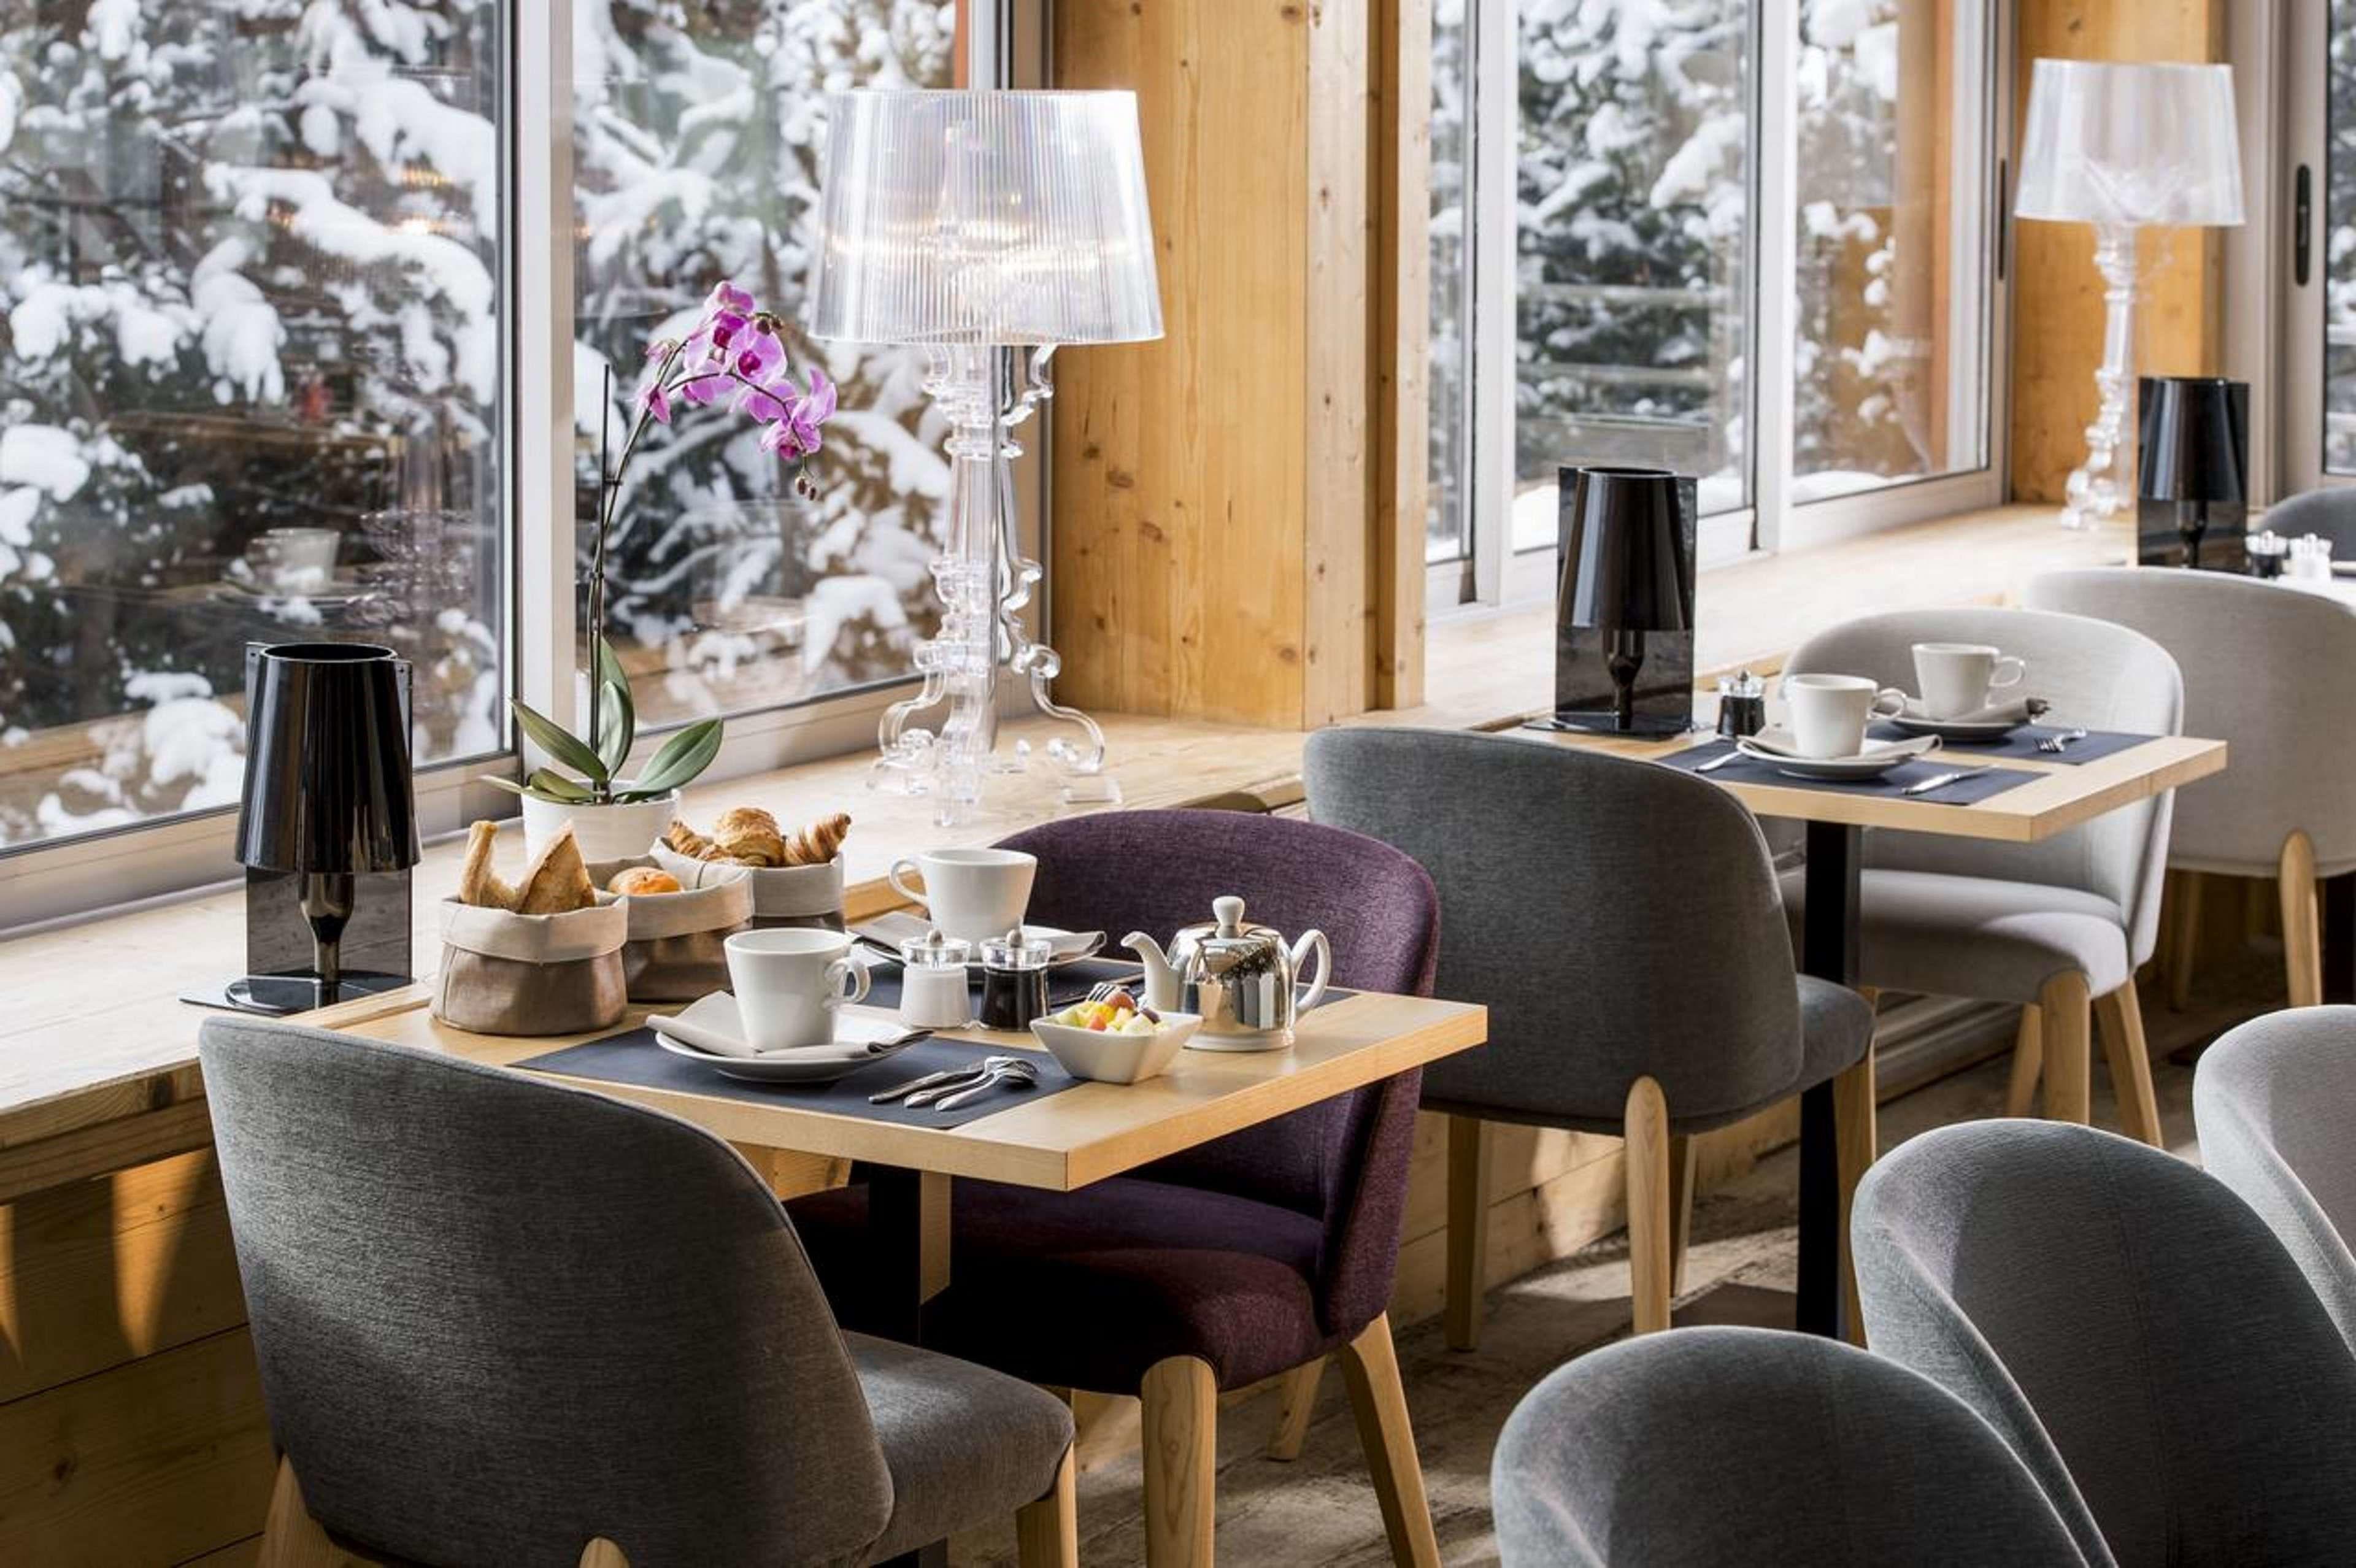 Hotel Le Pic Blanc Alpe d'Huez Exterior foto